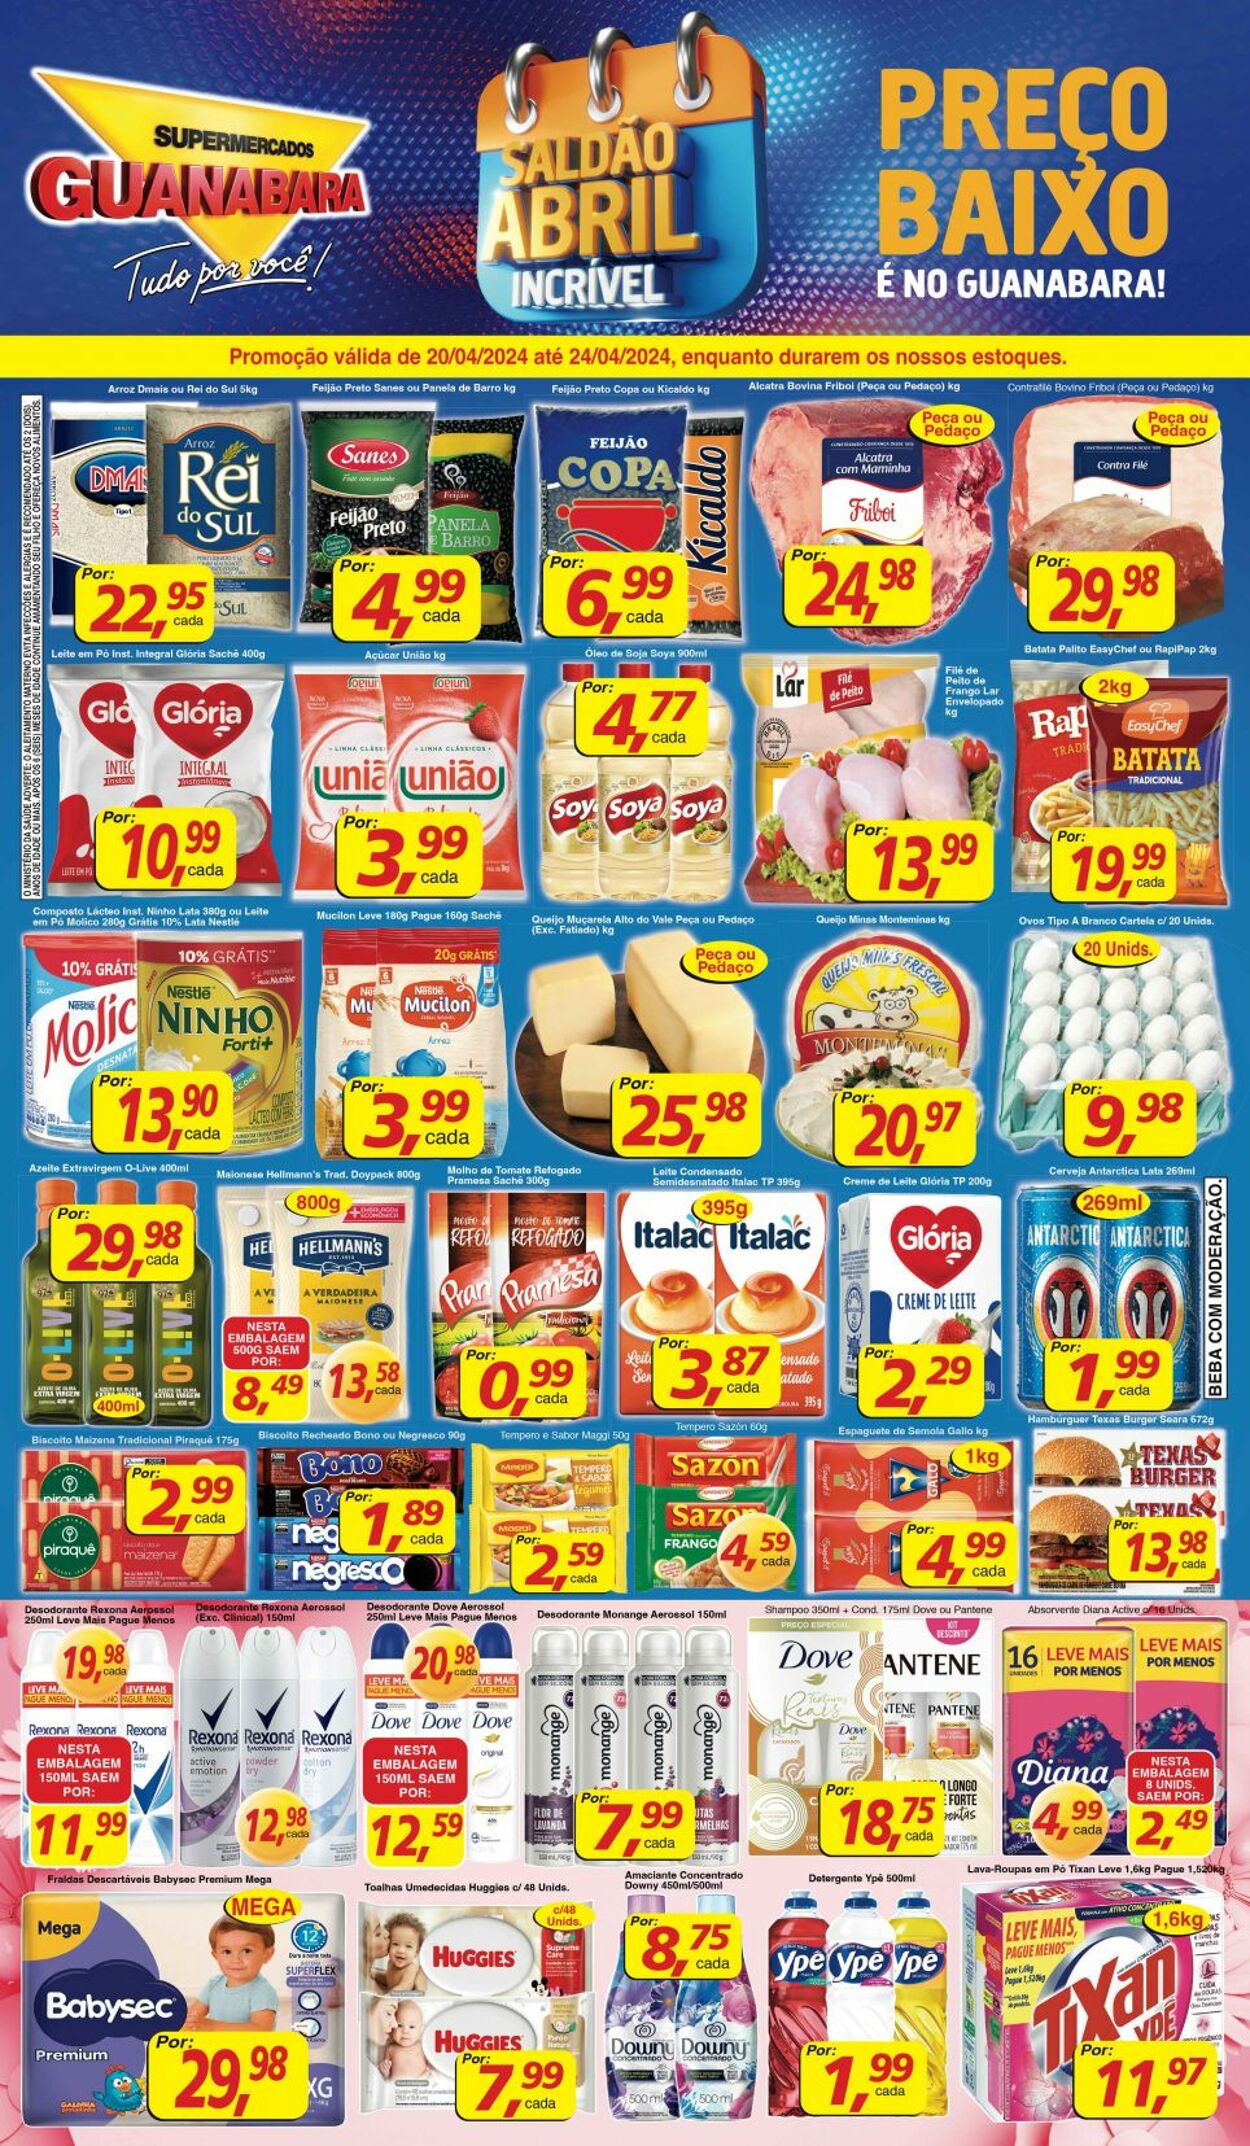 Folheto Supermercados Guanabara - Encarte — Supermercados Guanabara 20 abr, 2024 - 24 abr, 2024